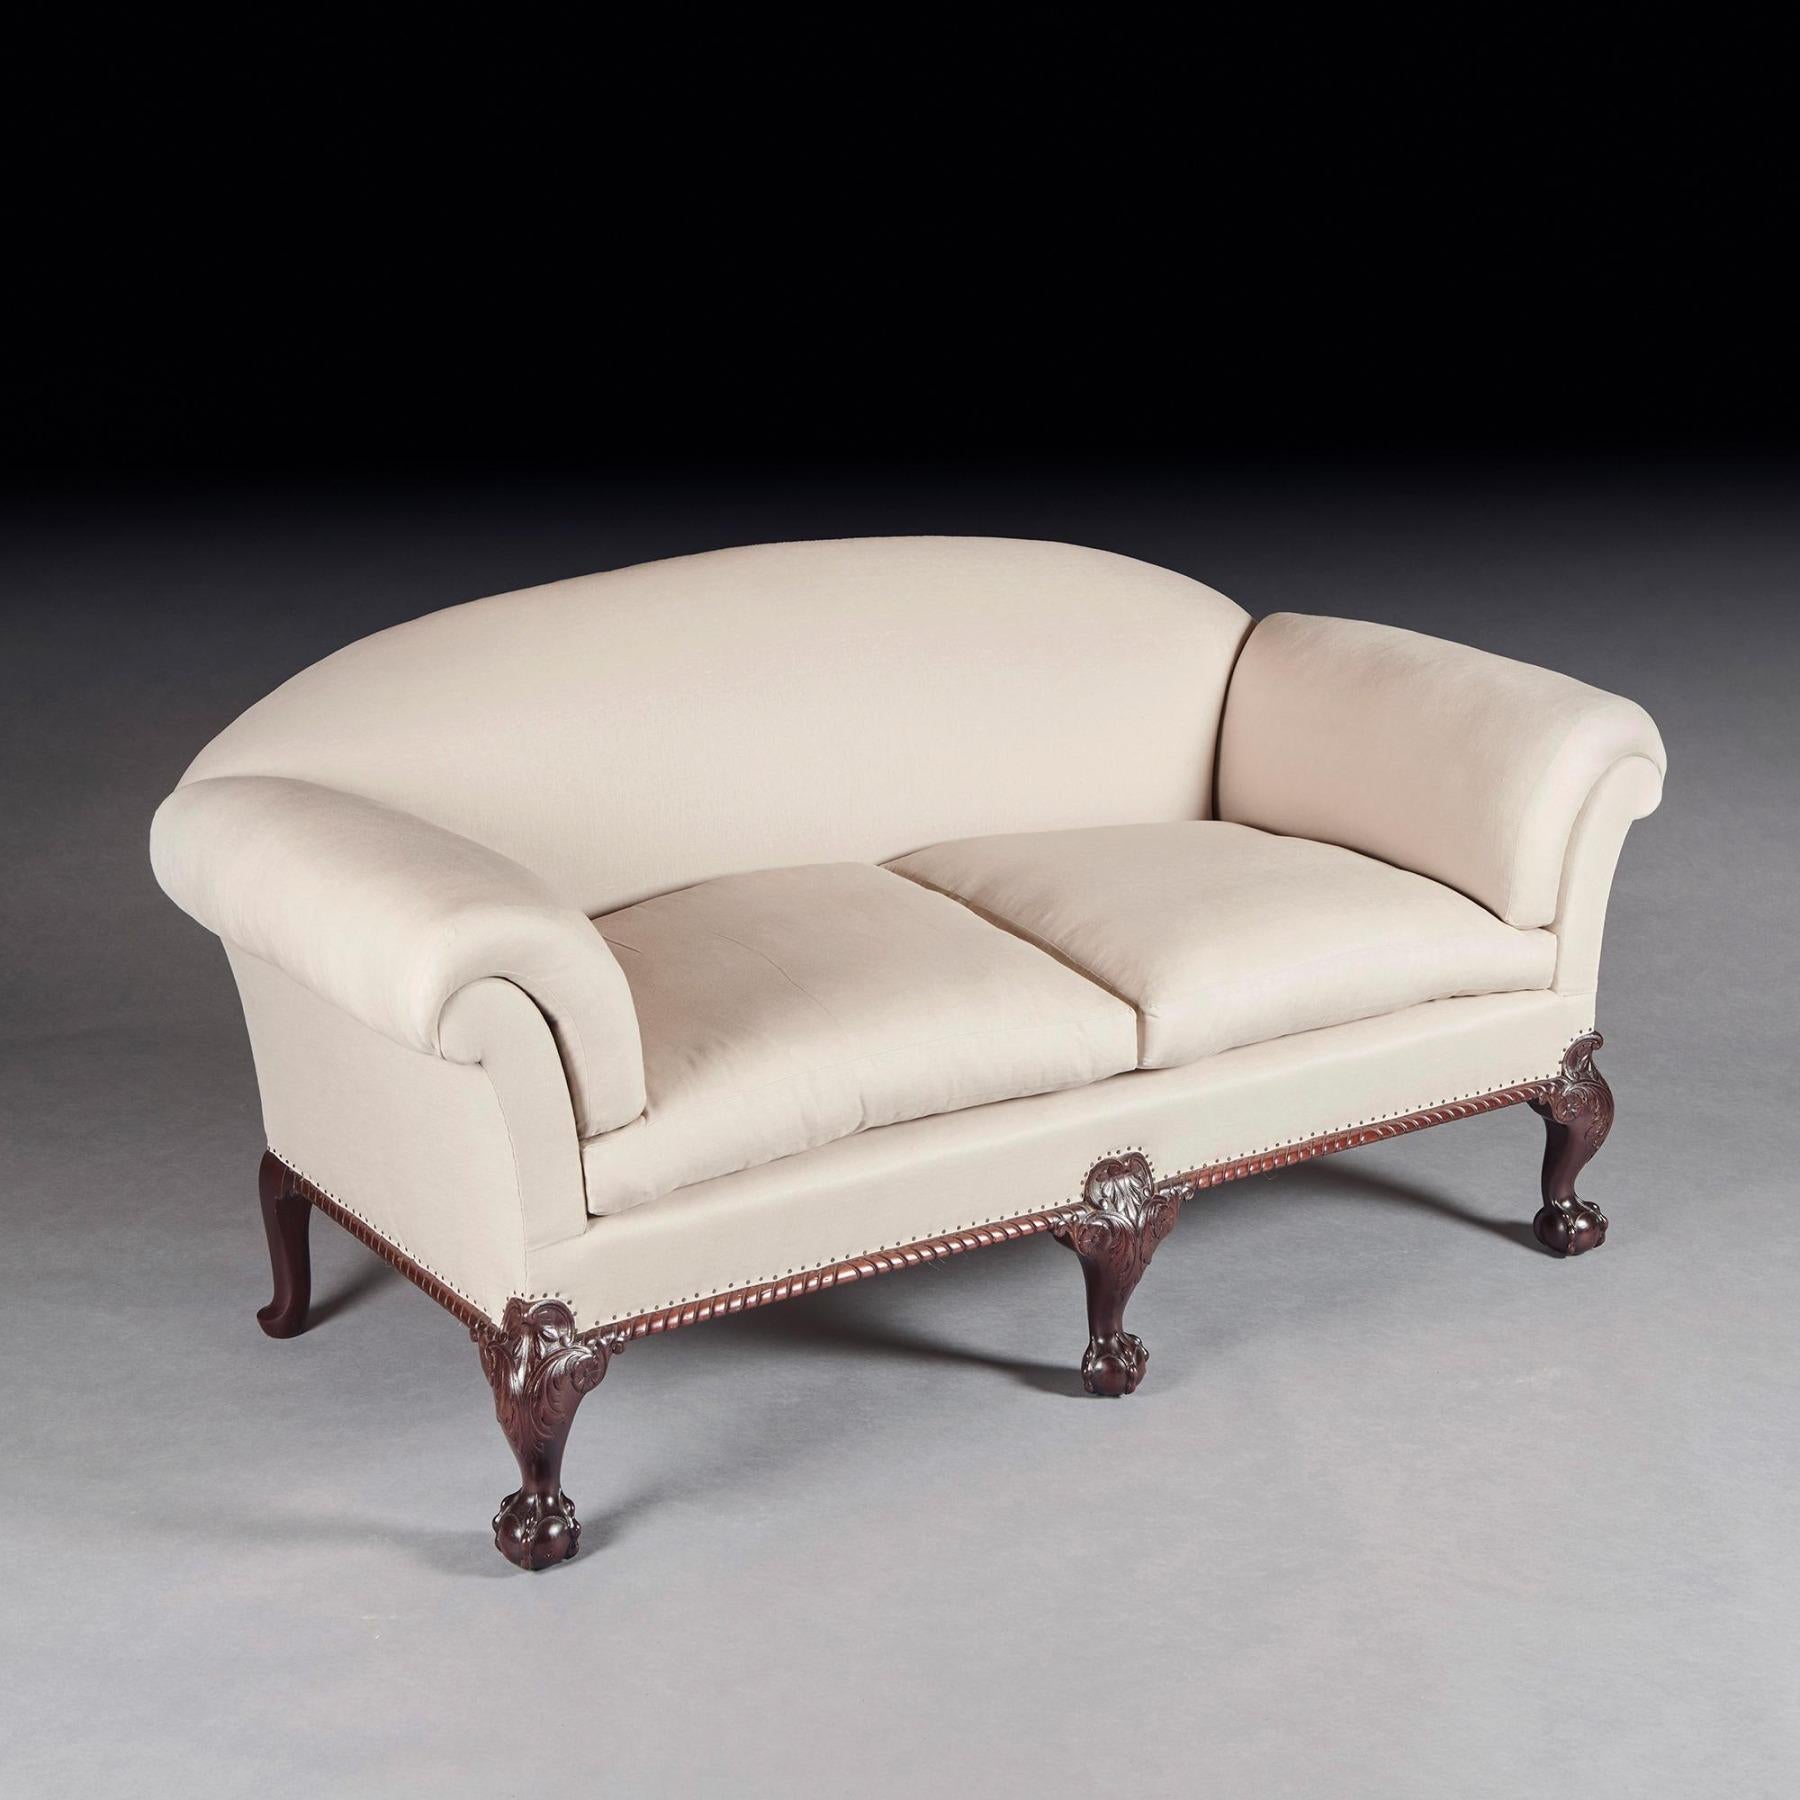 Ein sehr schönes Daunenfedersofa aus dem 19. Jahrhundert mit Kugel und Kralle nach dem Ramsden-Kugel- und Krallenmodell von Howard and Sons

Englisch um 1880-1900

Wunderbar gezeichnet, war es seltsam, keine Herstellermarke auf diesem Sofa zu